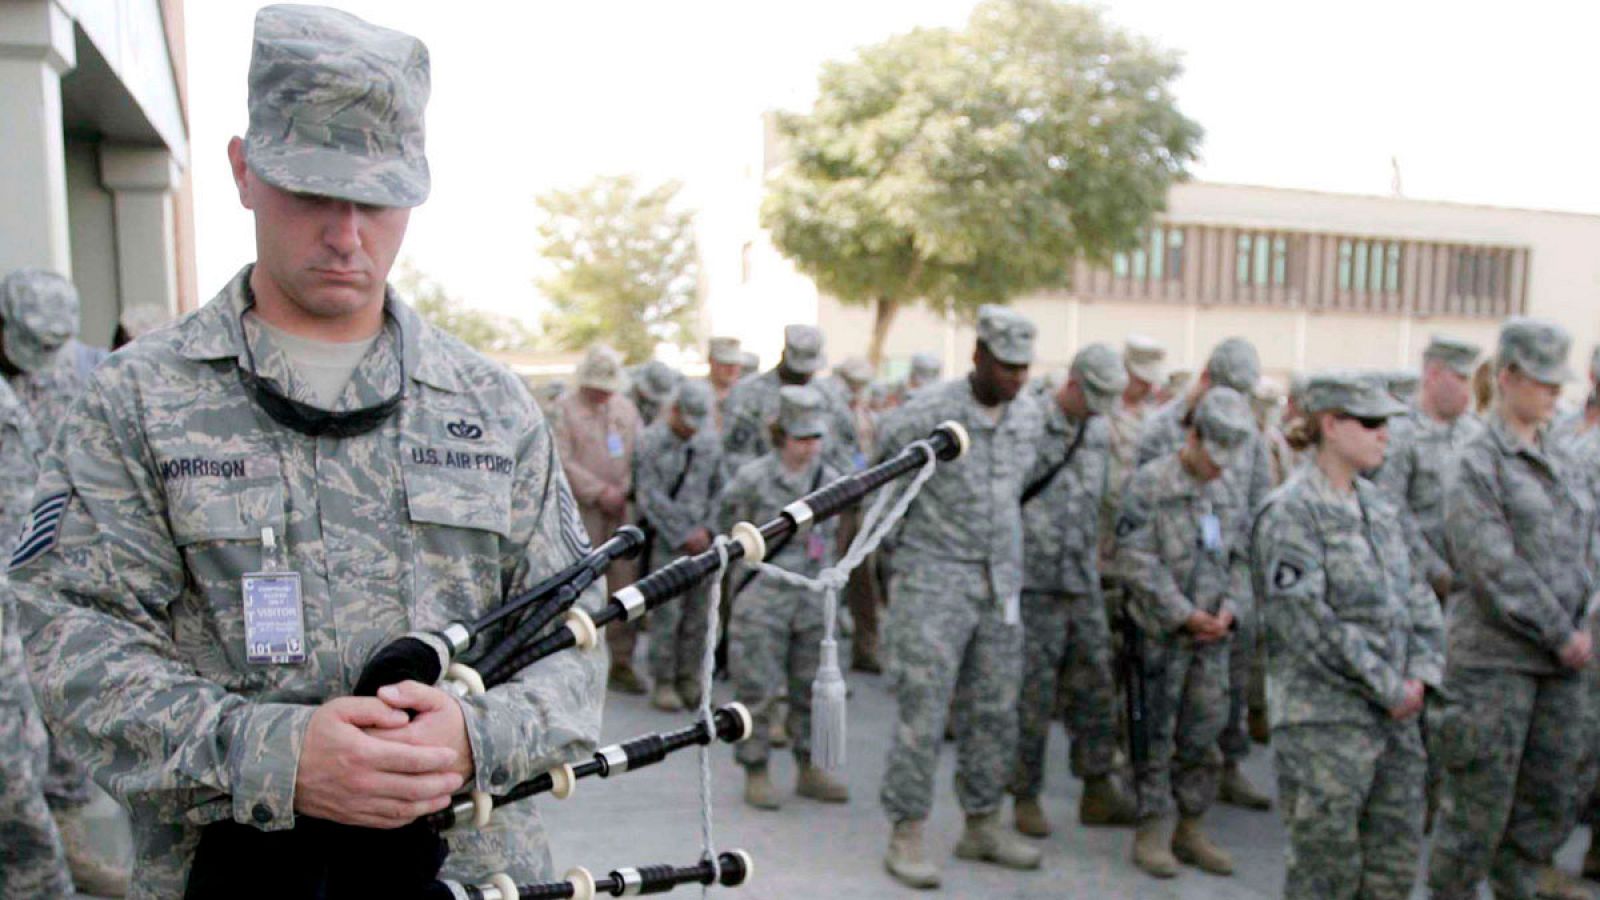 Imagen de archivo en la que se ve a un grupo de soldados estadounidense durante una ceremonia de conmemoración de los atentados del 11-S, en la base aérea de Bagram (Afganistán), el 11 de septiembre de 2008.